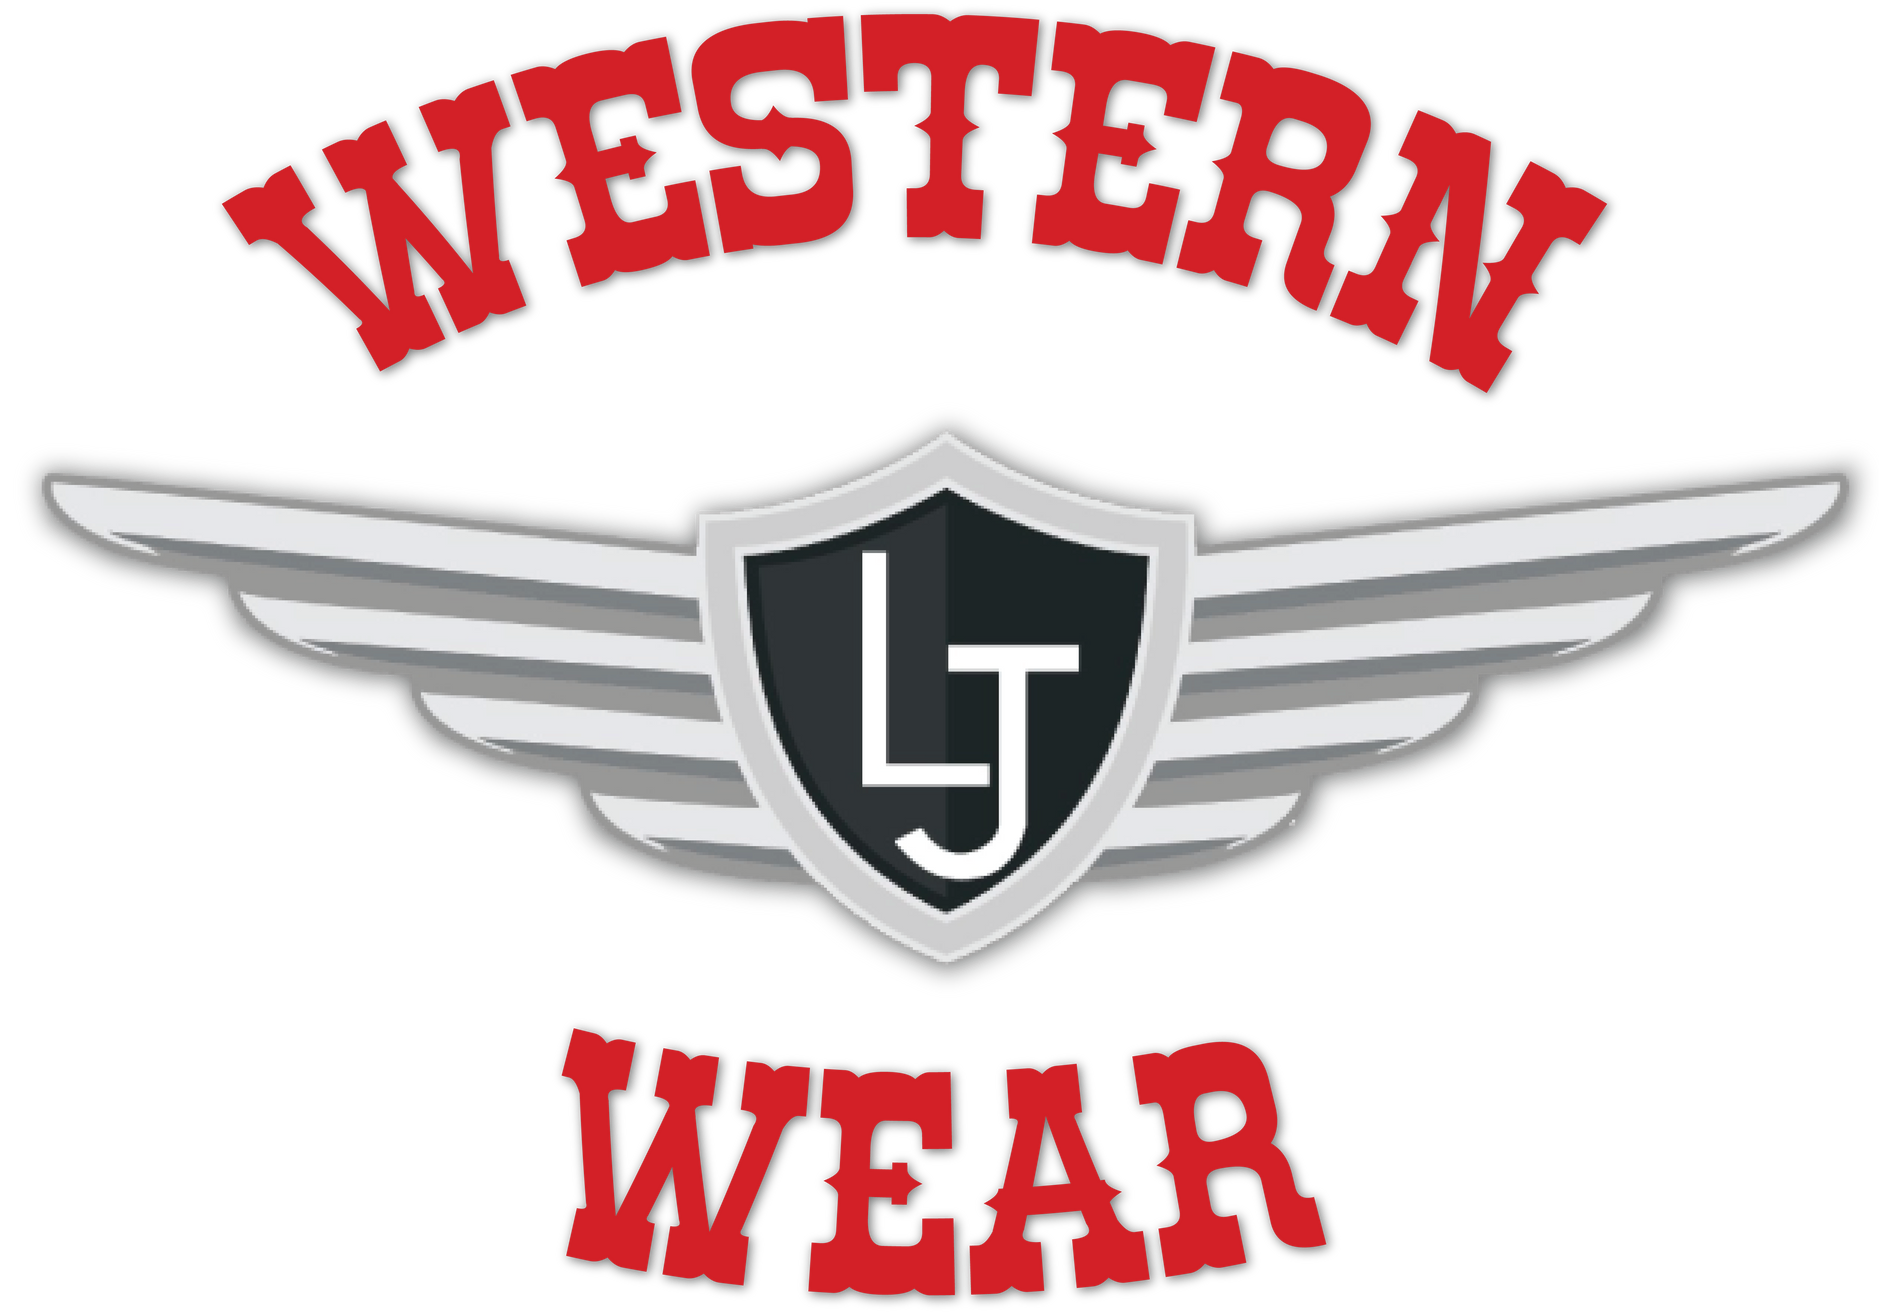 Shop LJ Western Wear in Jackson TN